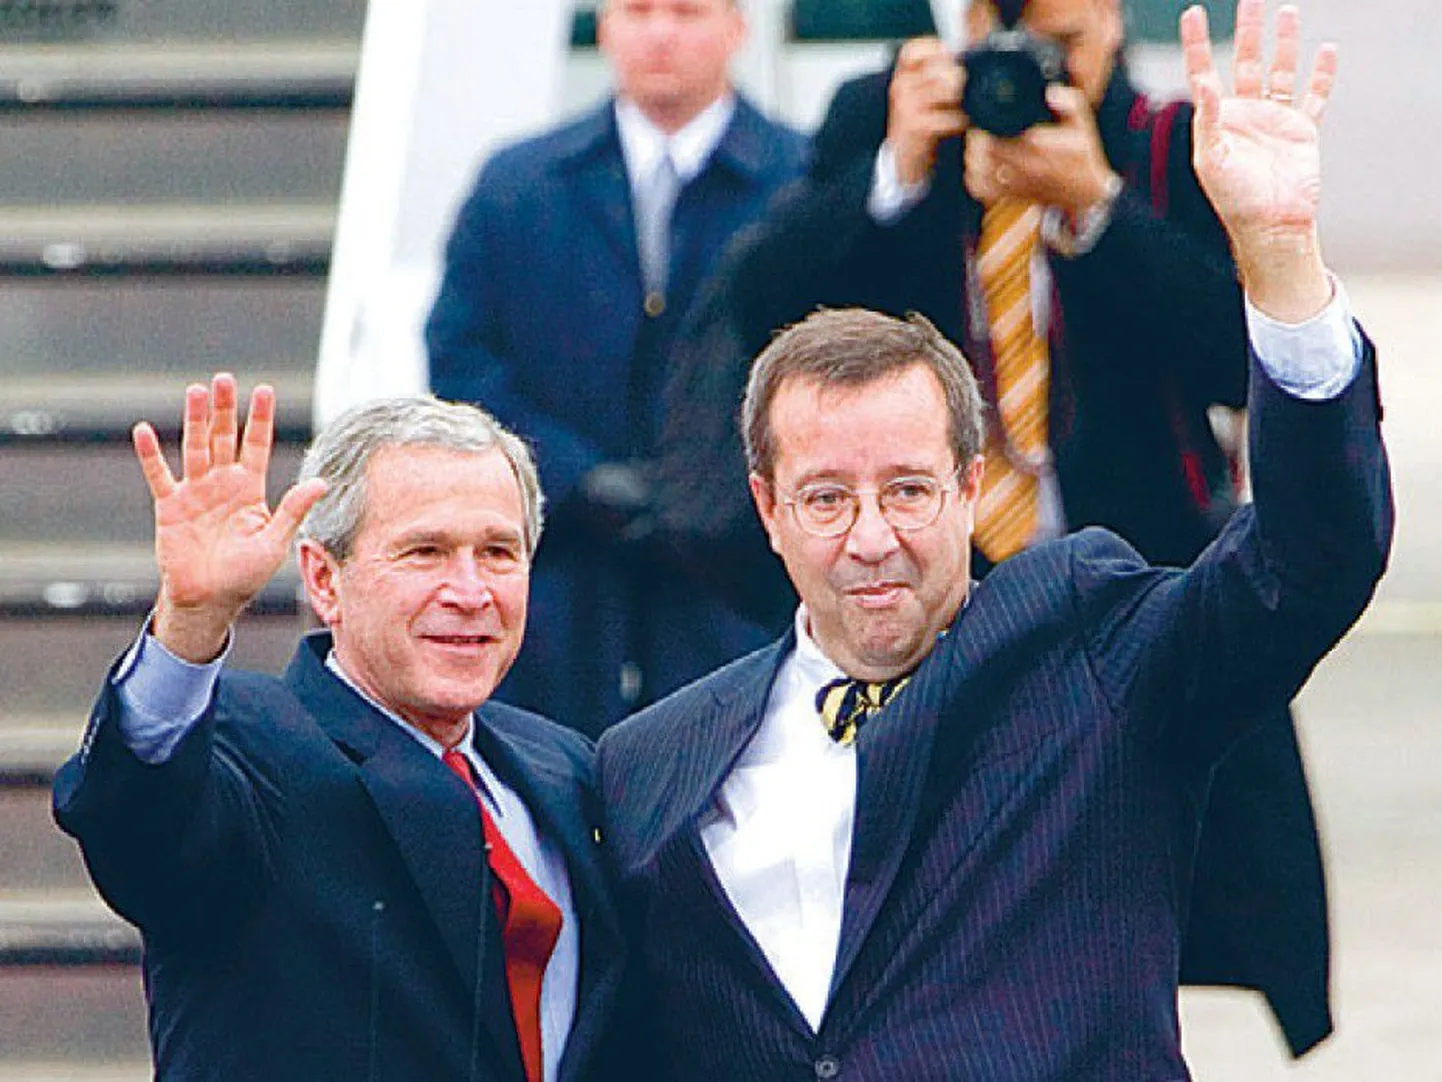 Kuu aega pärast Elizabeth II visiiti külastas
Tallinna ka USA president George W. Bush.
Ilves teenis suurriigi pead võõrustades avalikkuse
lugupidamise sellega, et suhtus Bushi kui
võrdsesse.